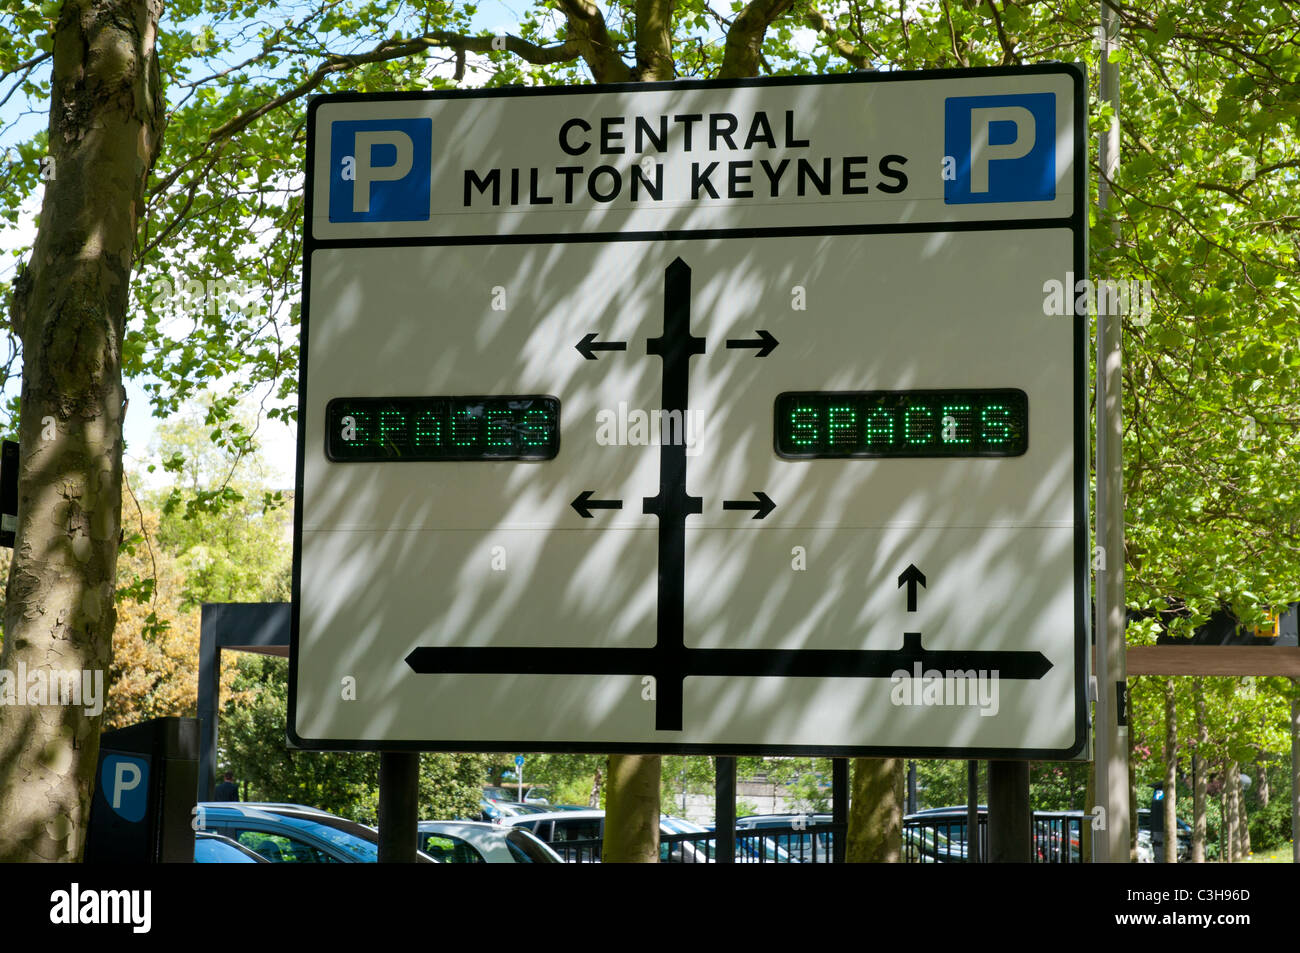 Milton Keynes Central Parking Road Sign Banque D'Images